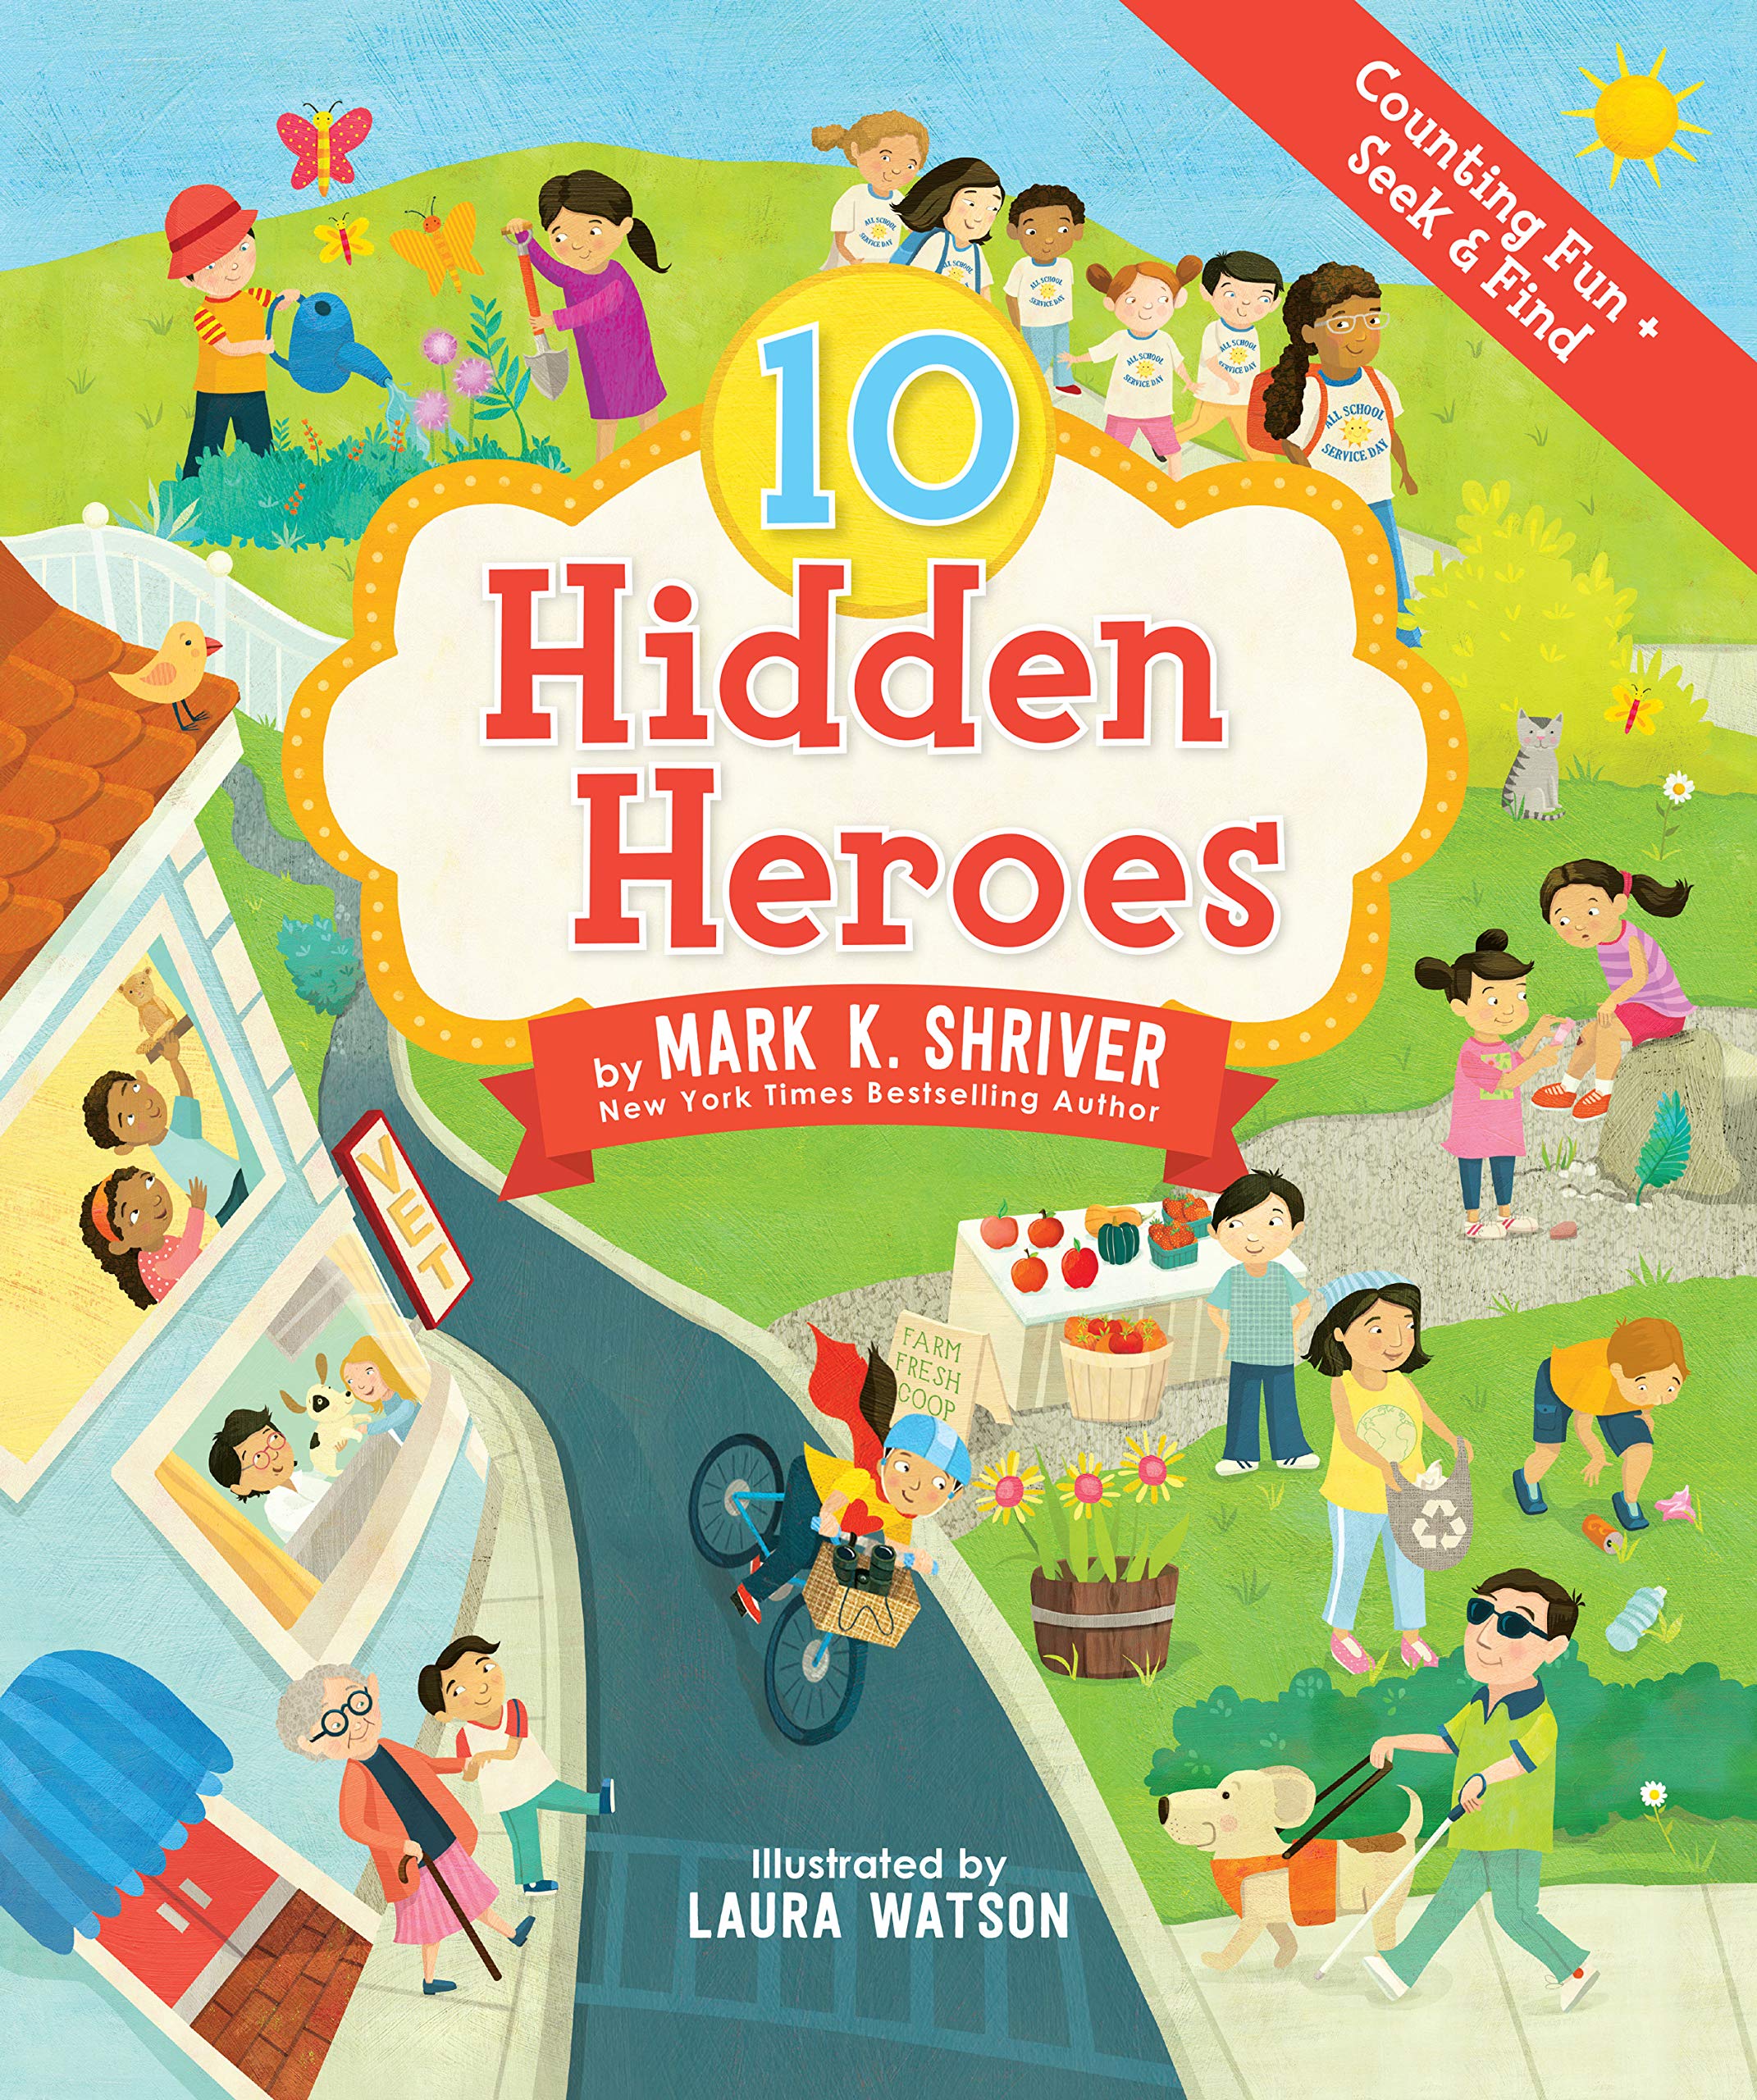 10 Hidden Heroes Kids' BookBuzz